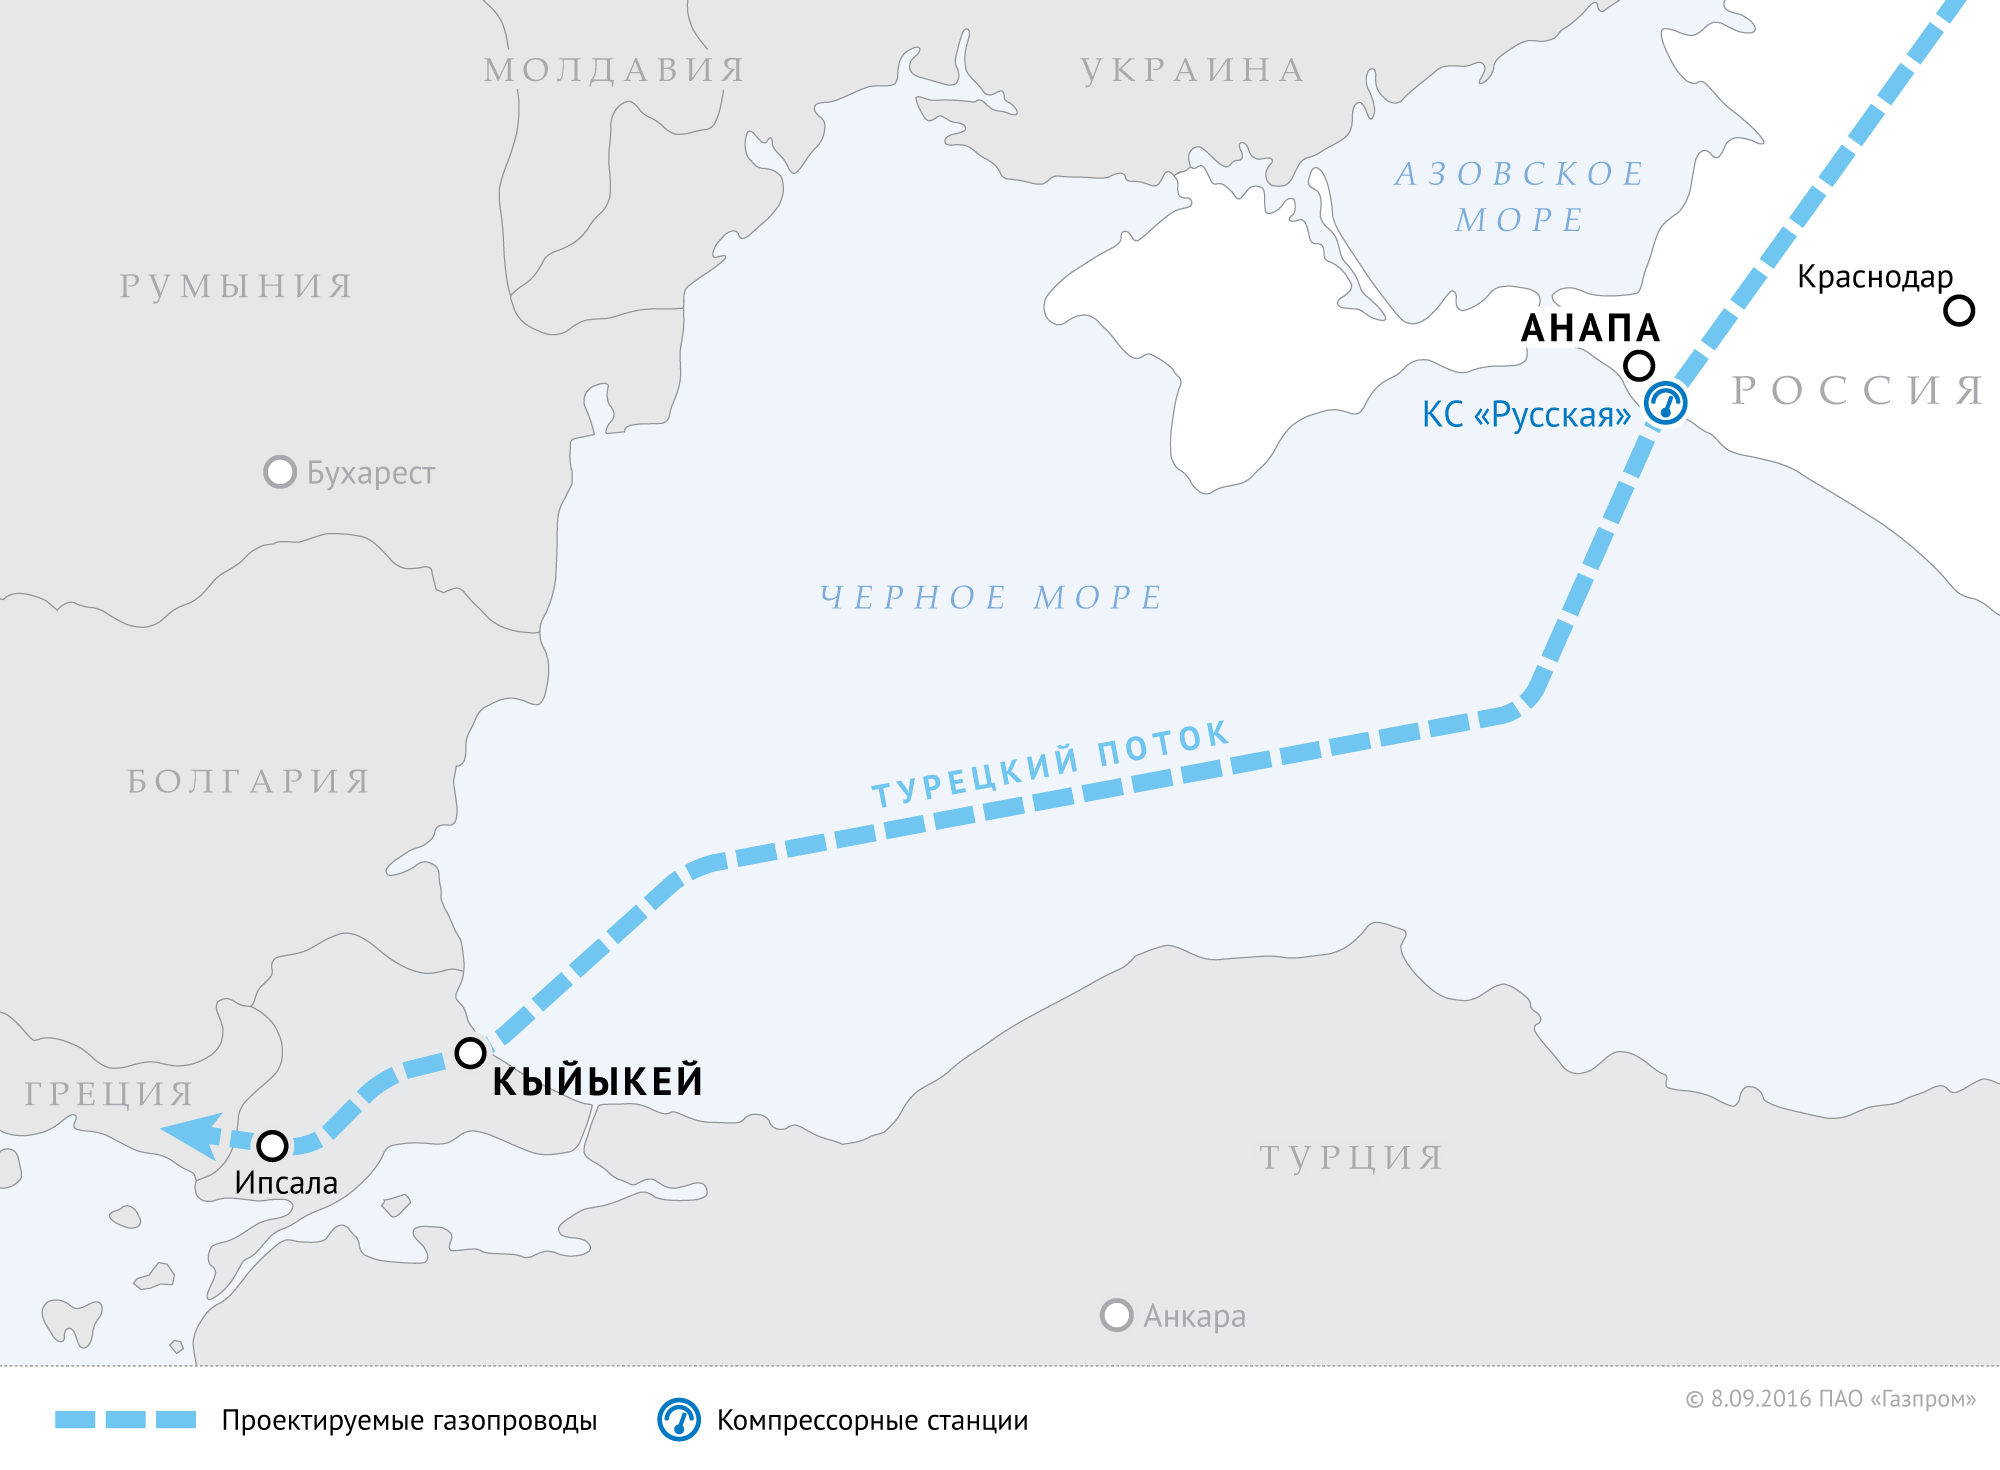 Турецкий поток